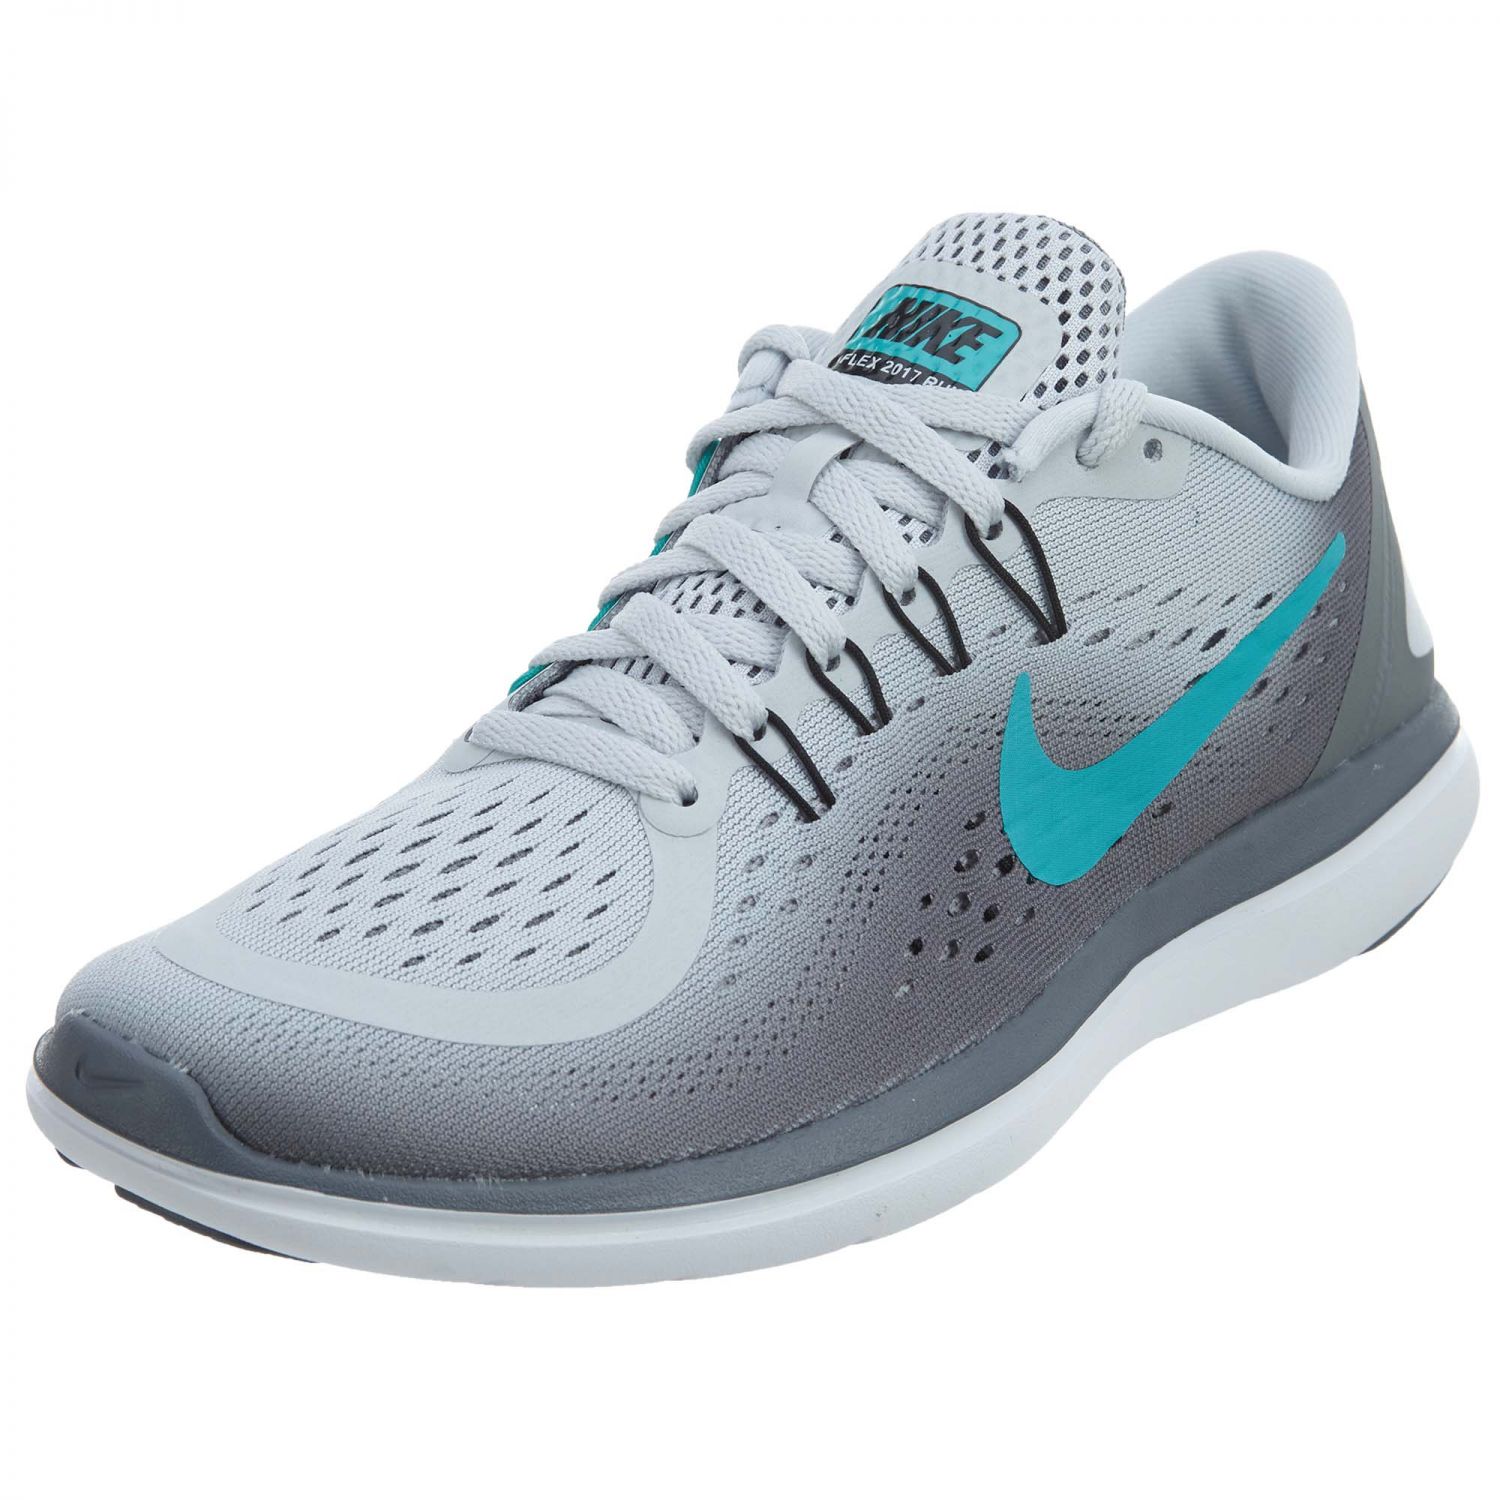 Buy Nike Women'S Flex Control Gray Sports Shoe Online @ ₹7495 from ...